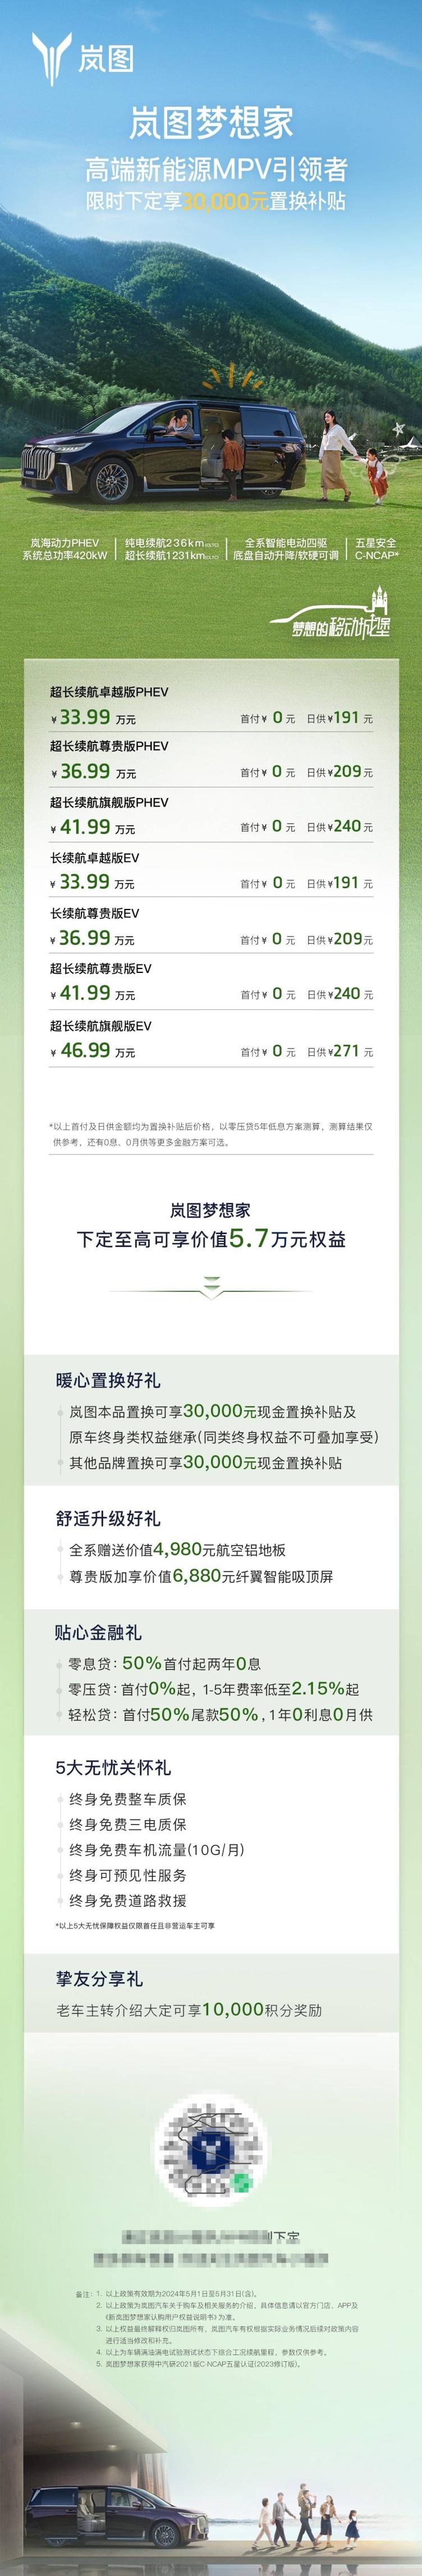 新岚图梦想家:置换补贴3万,综合权益57万,筑梦绿色未来